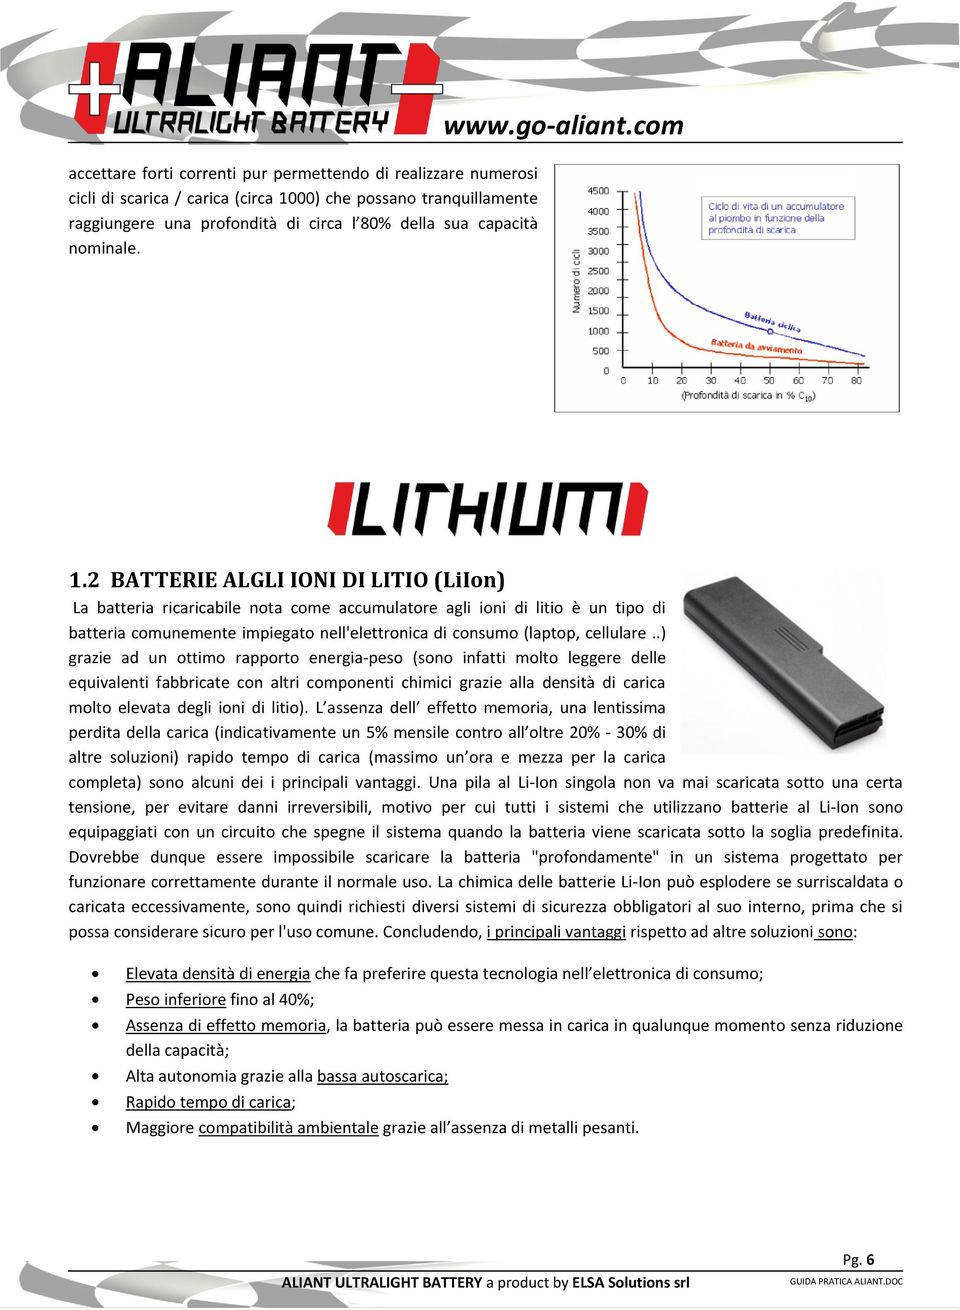 2 BATTERIE ALGLI IONI DI LITIO (LiIon) La batteria ricaricabile nota come accumulatore agli ioni di litio è un tipo di batteria comunemente impiegato nell'elettronica di consumo (laptop, cellulare.